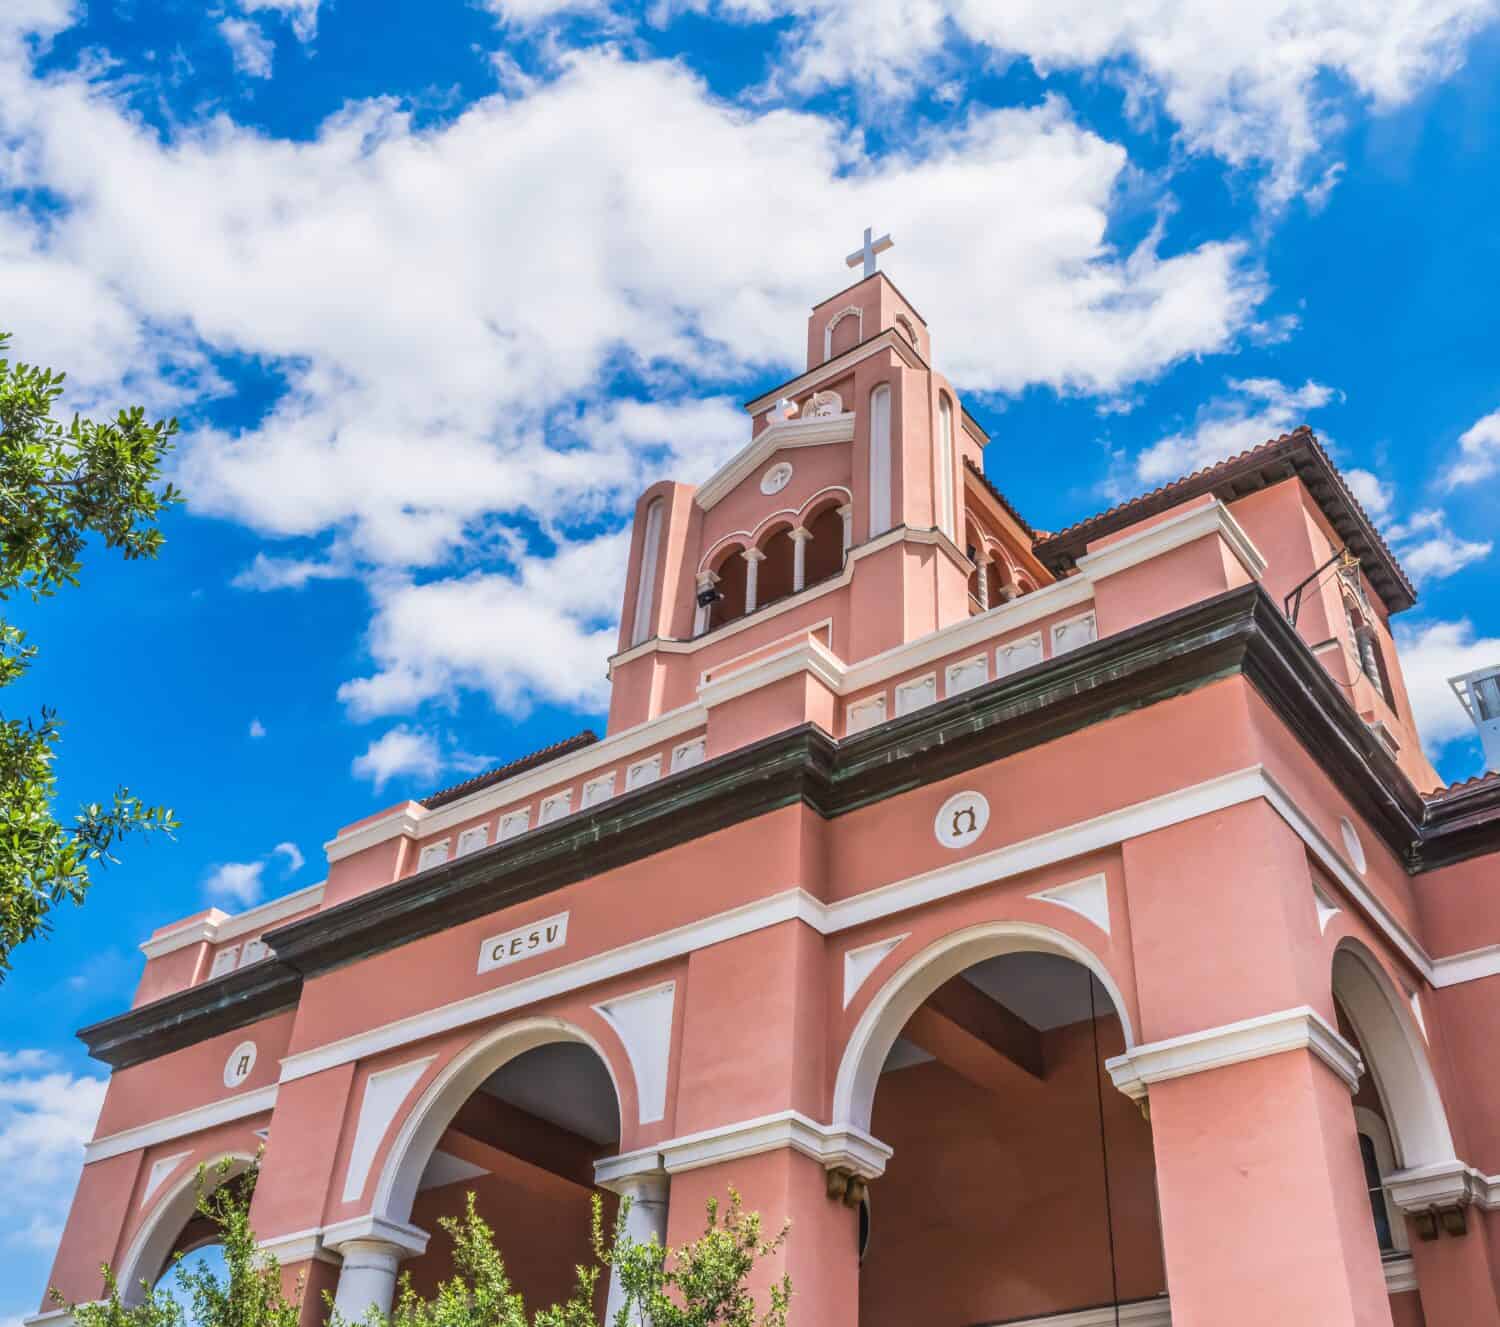 Storica facciata della chiesa cattolica del Gesù fuori Miami, Florida.  Fondata nel 1898 Chiesa costruita negli anni '20.